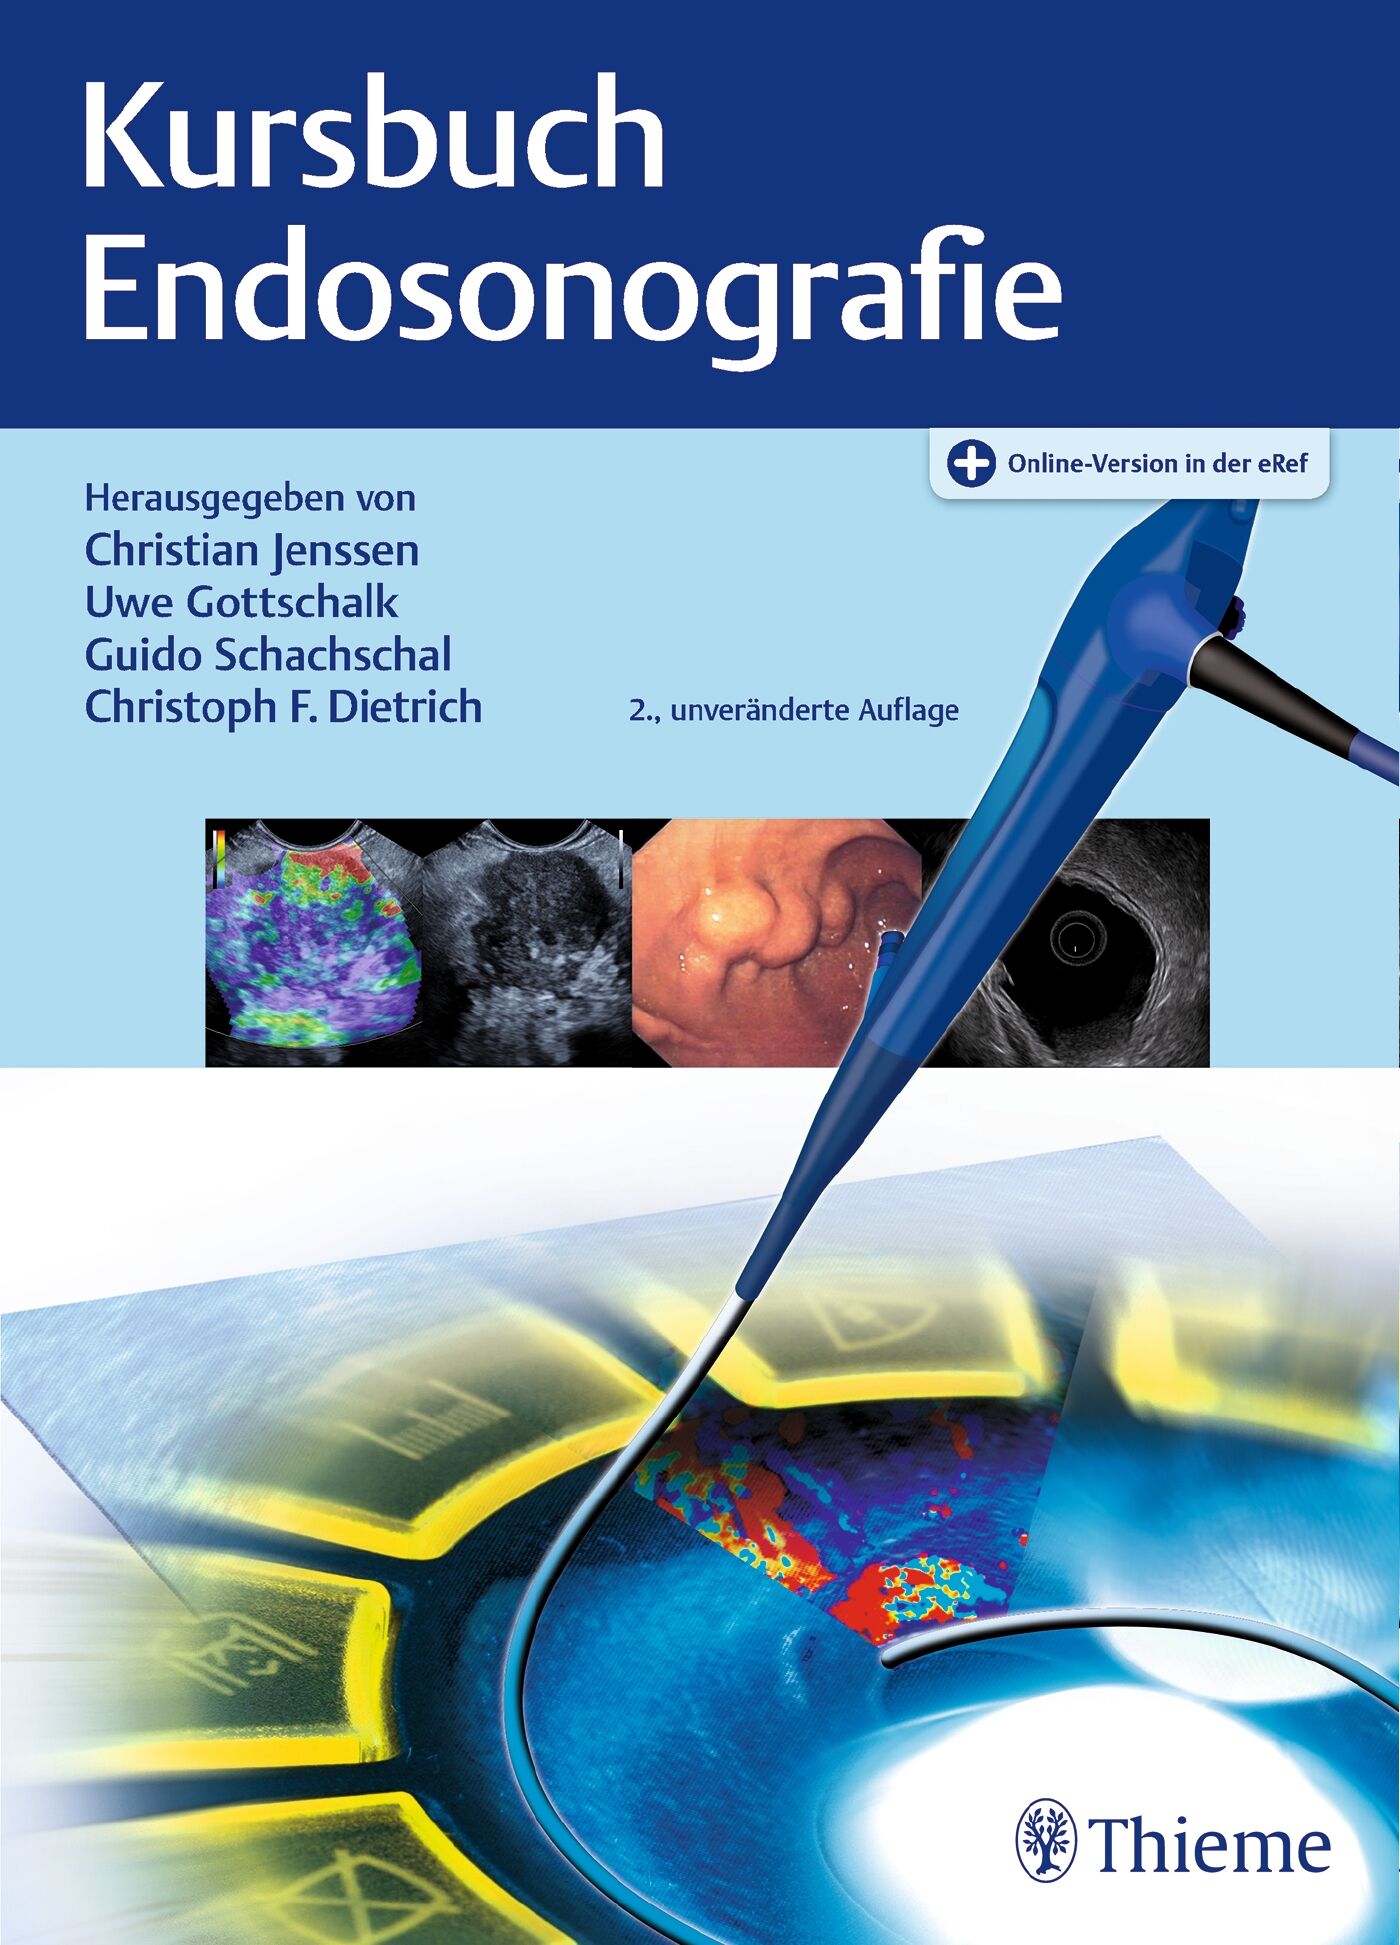 Kursbuch Endosonografie, 9783132425859